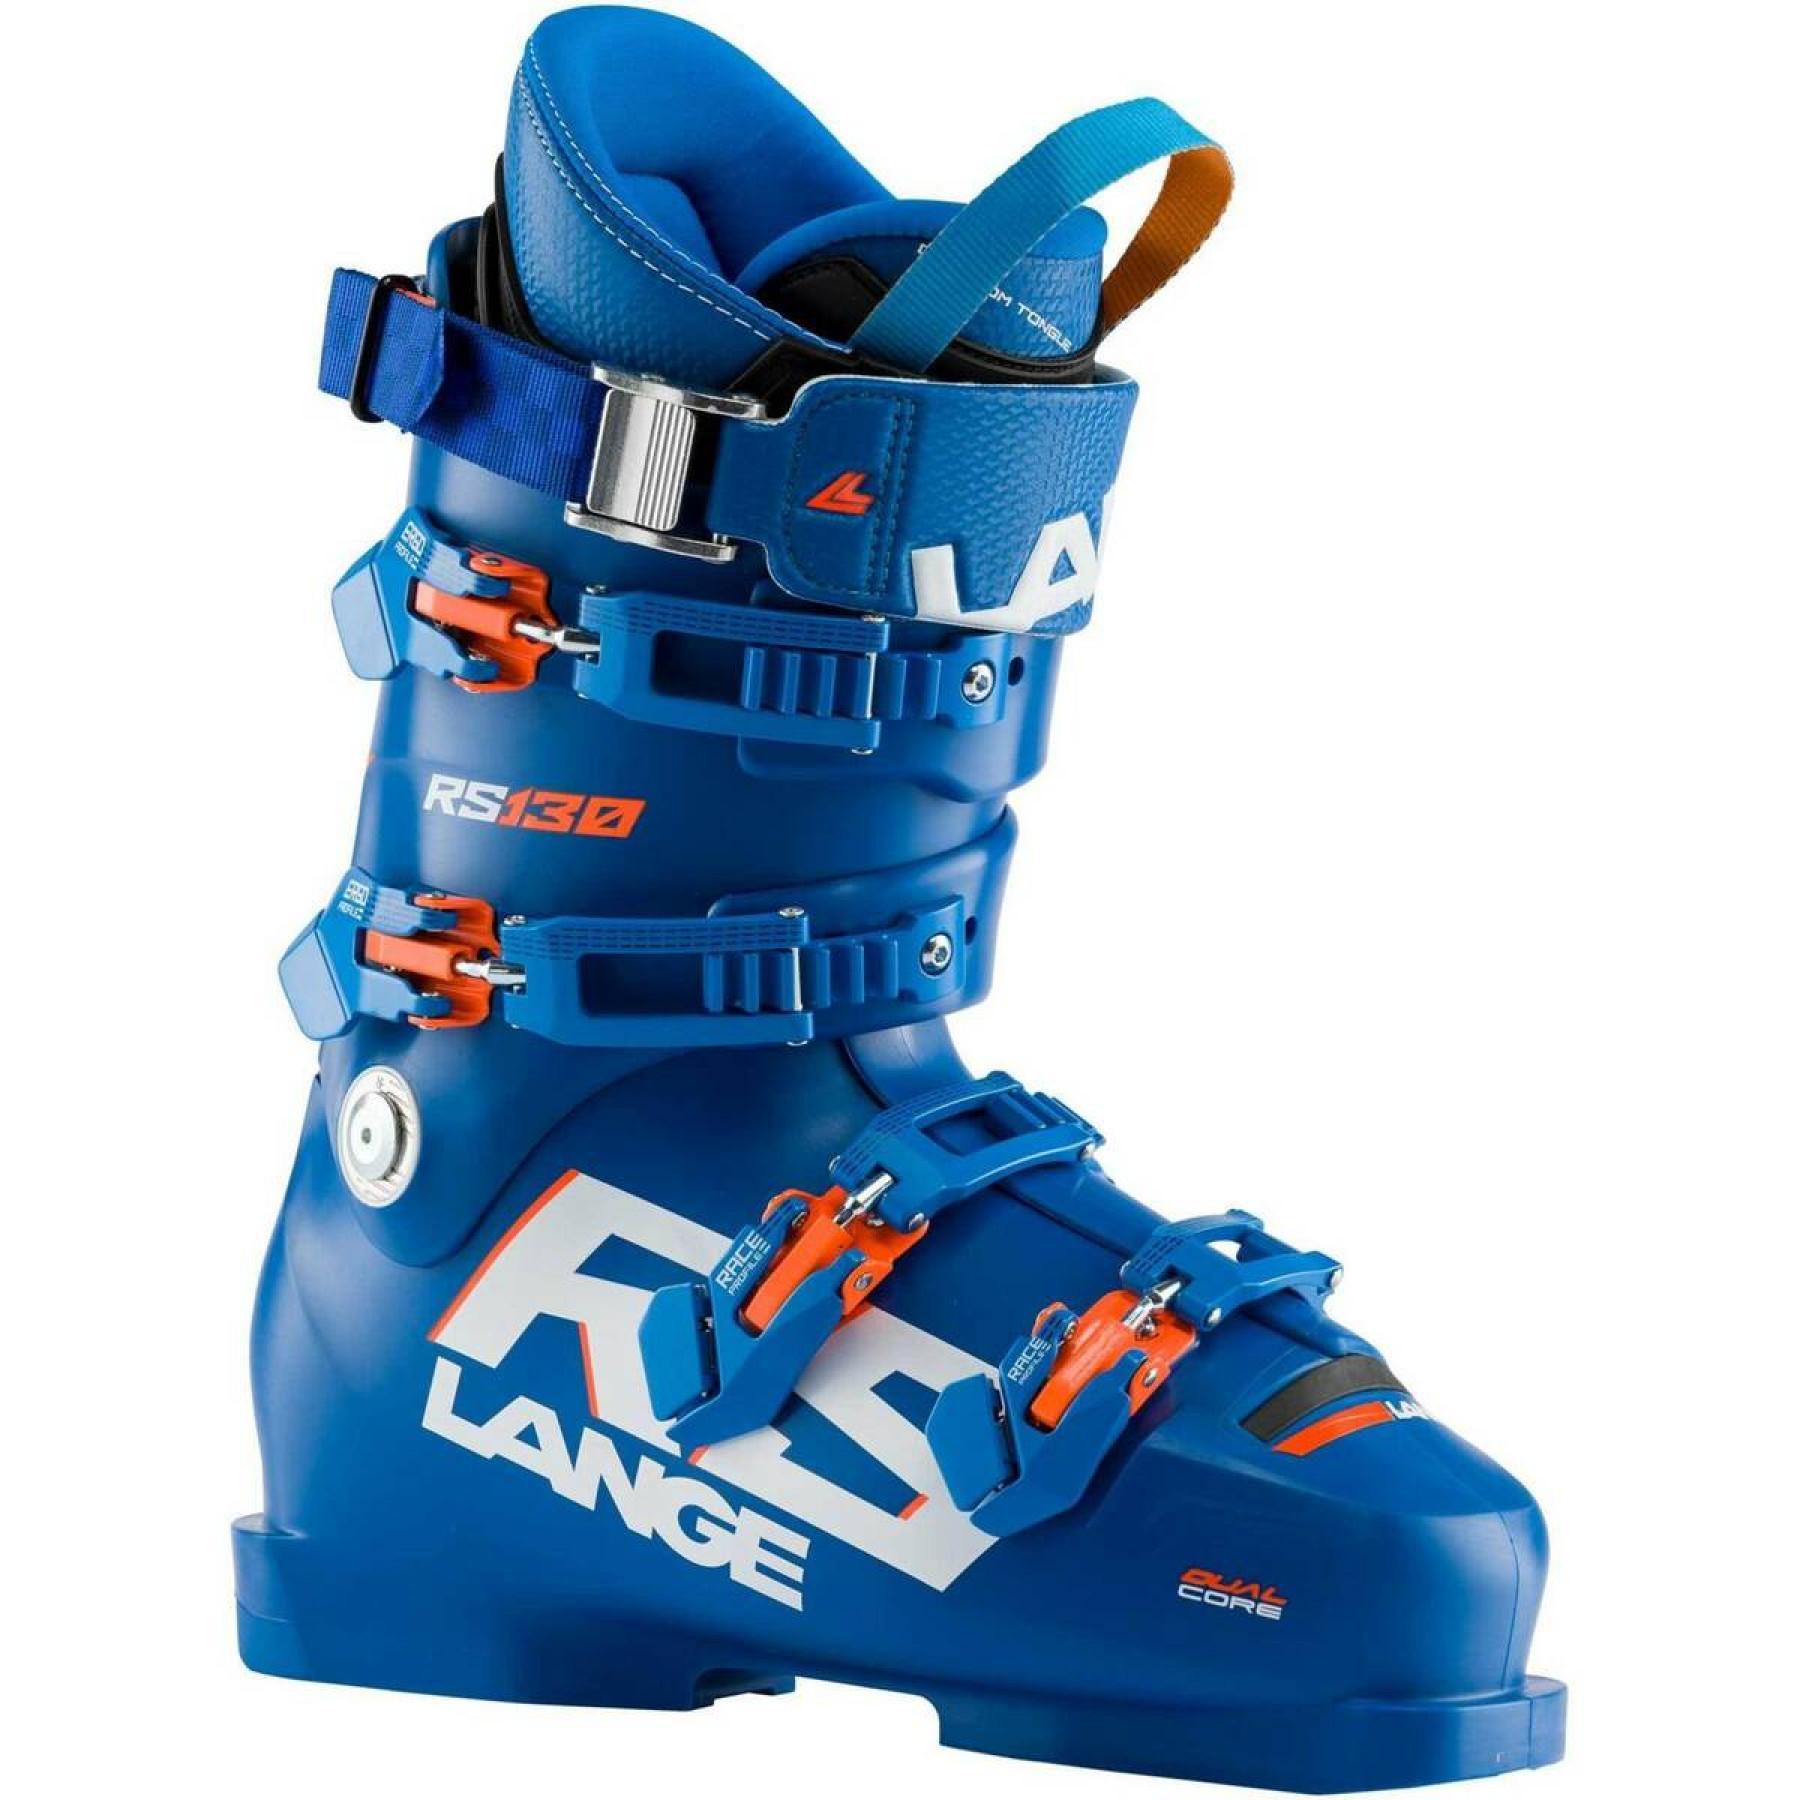 Ski boots Lange rs 130